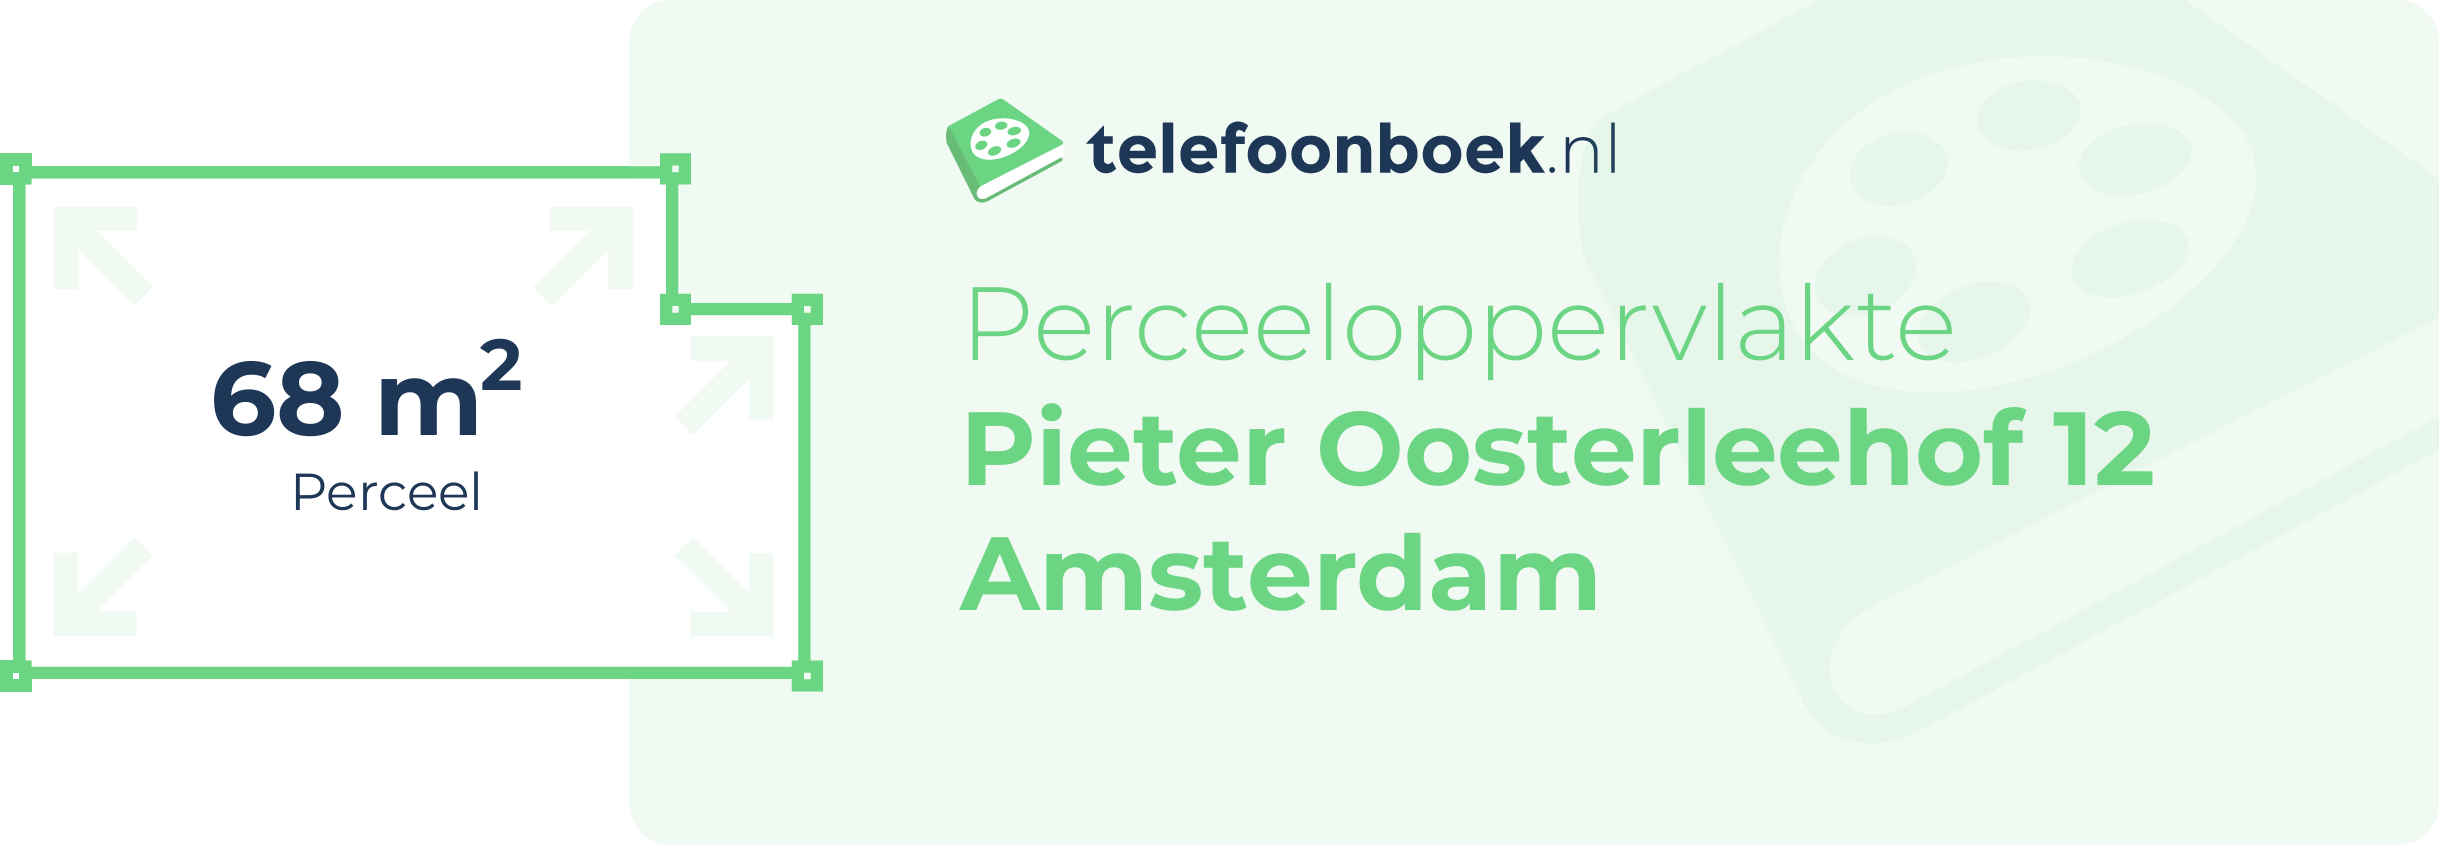 Perceeloppervlakte Pieter Oosterleehof 12 Amsterdam